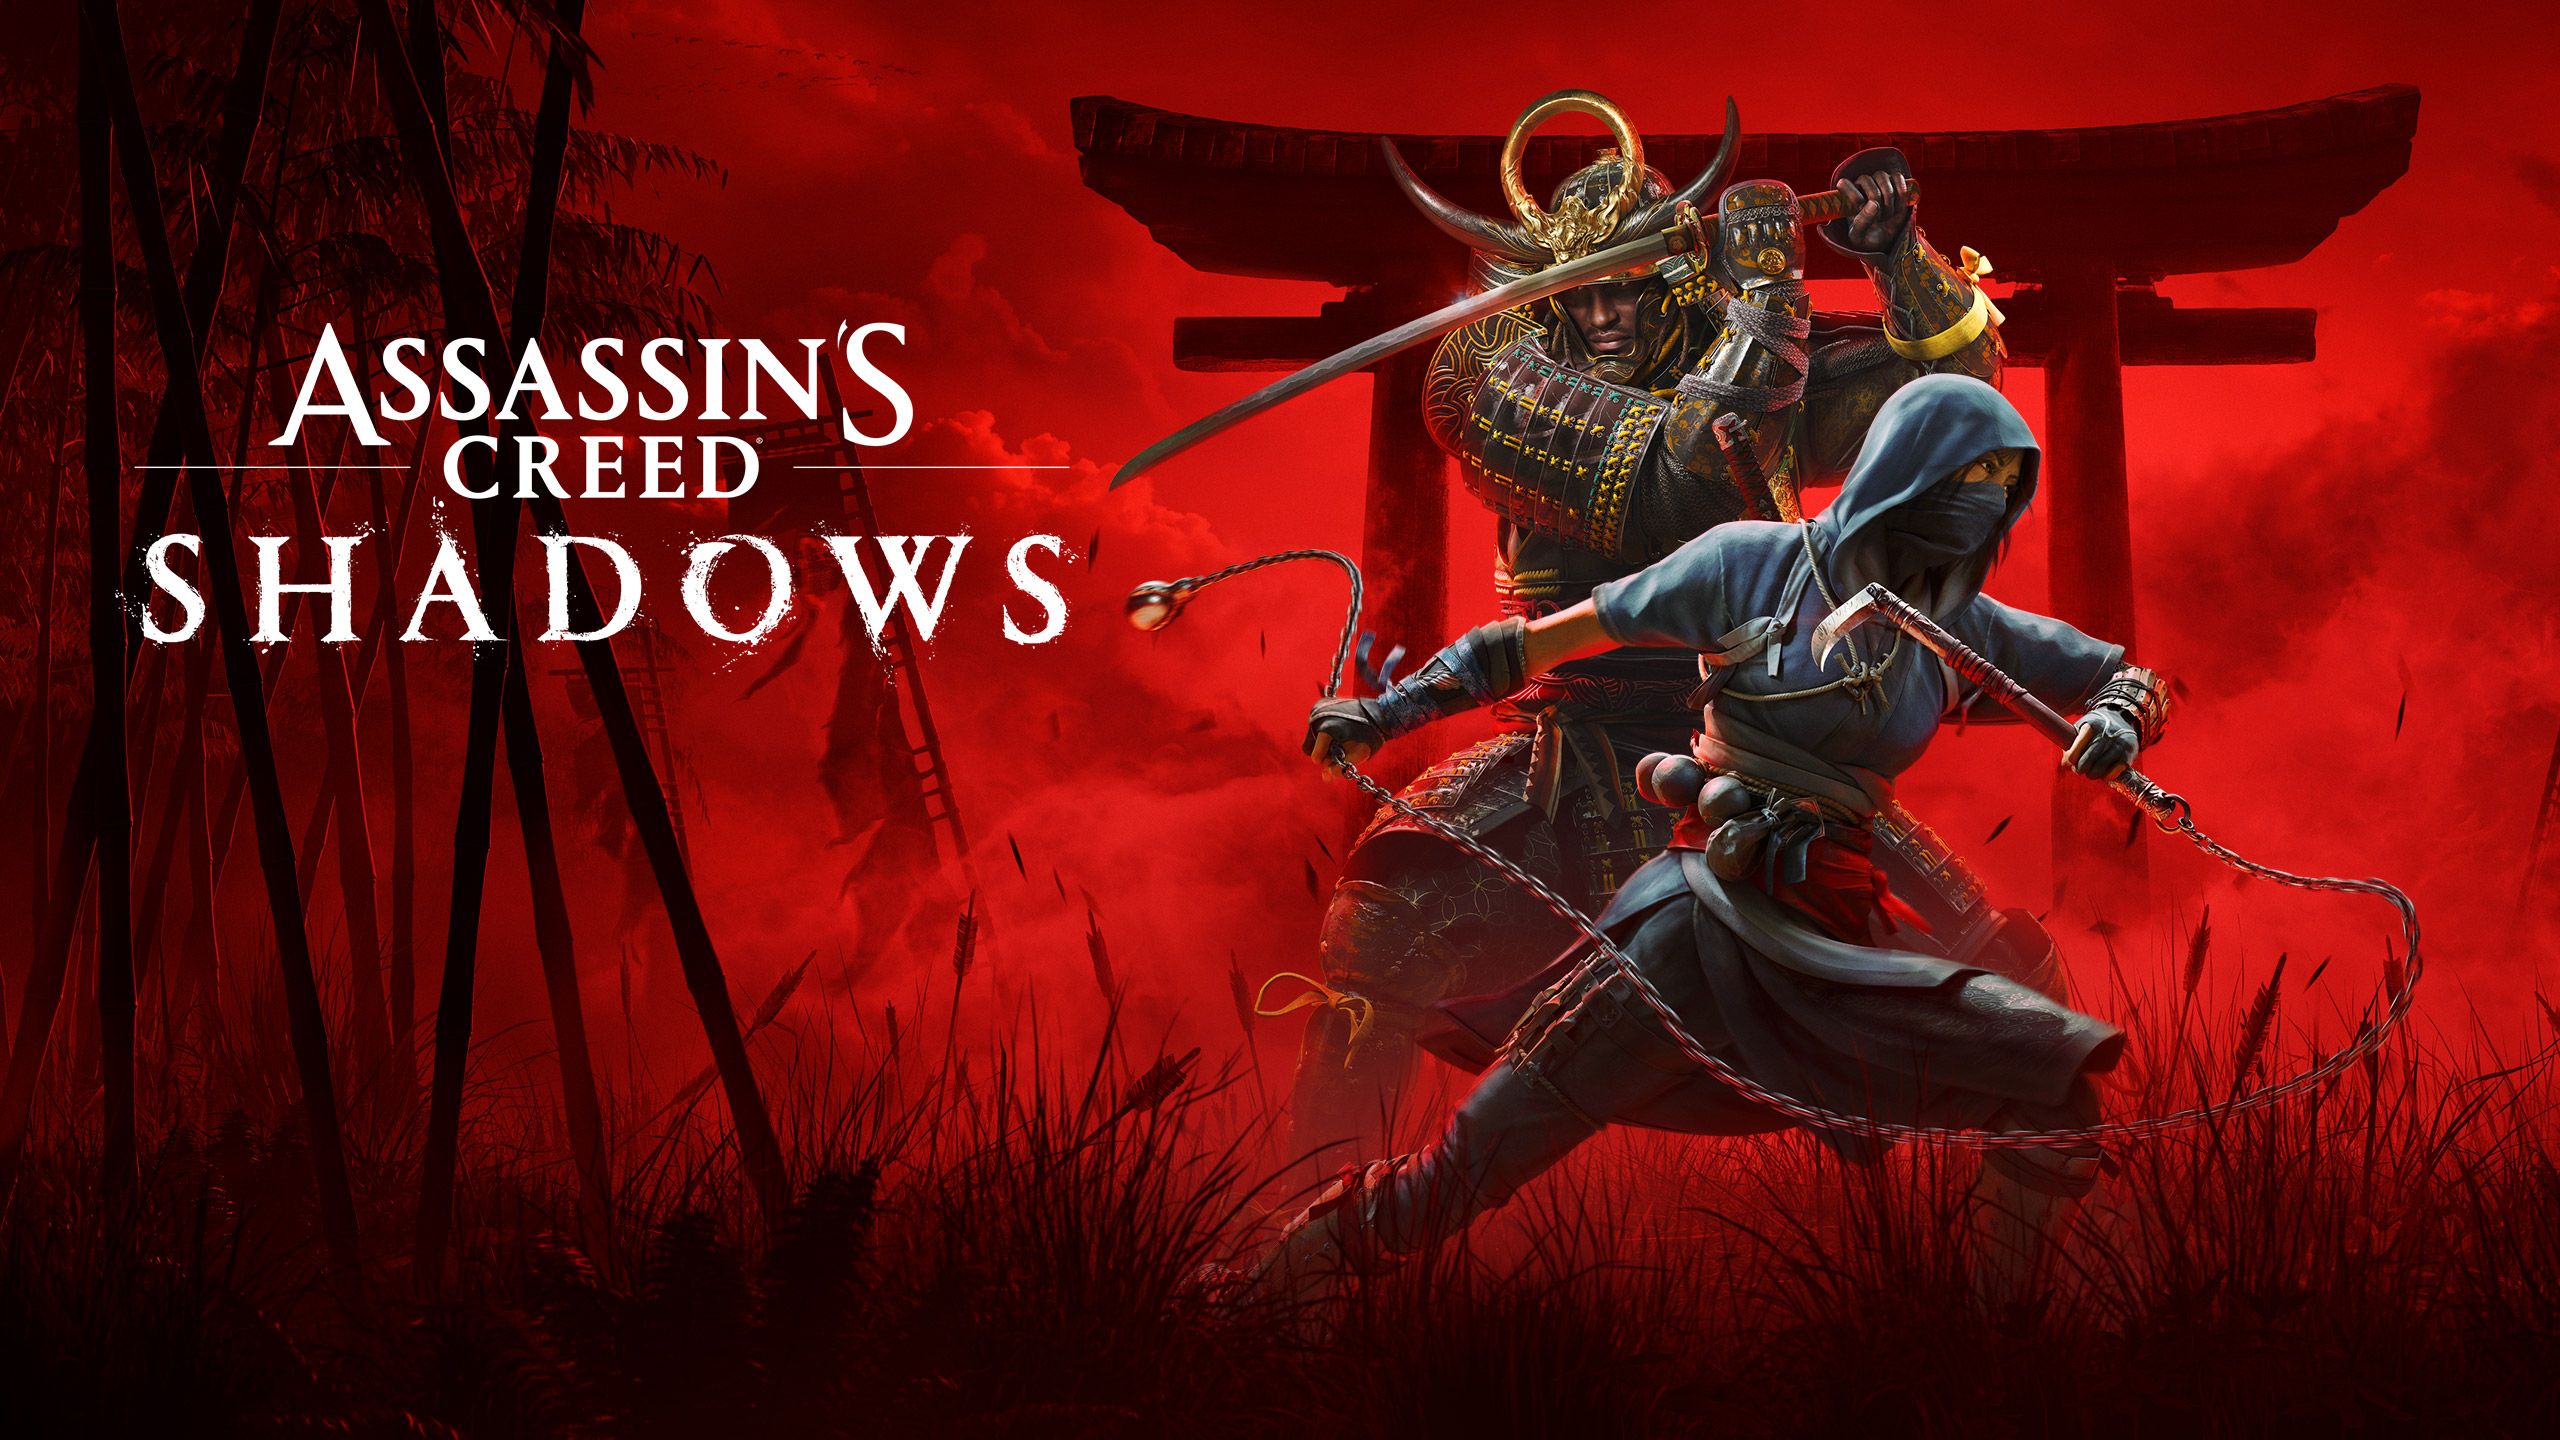 Assassin’s Creed: Shadows, i videogiocatori potranno scegliere il personaggio liberamente